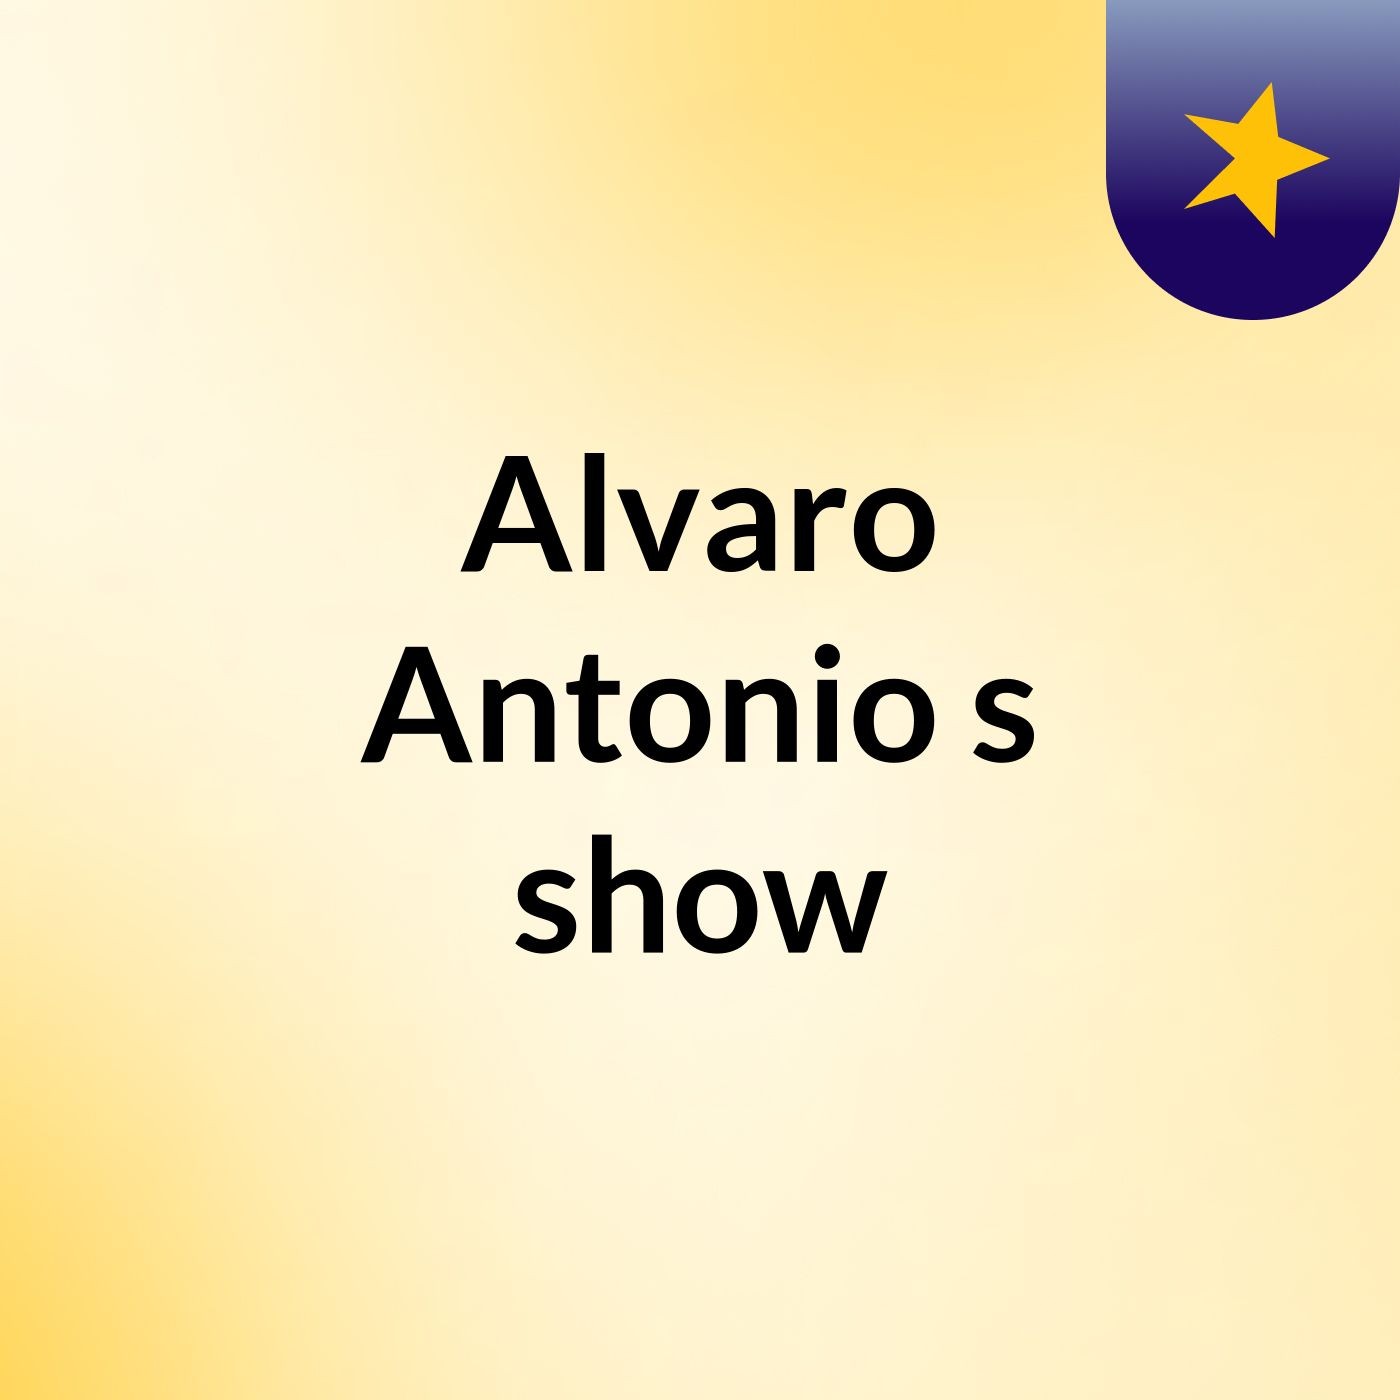 Alvaro Antonio's show